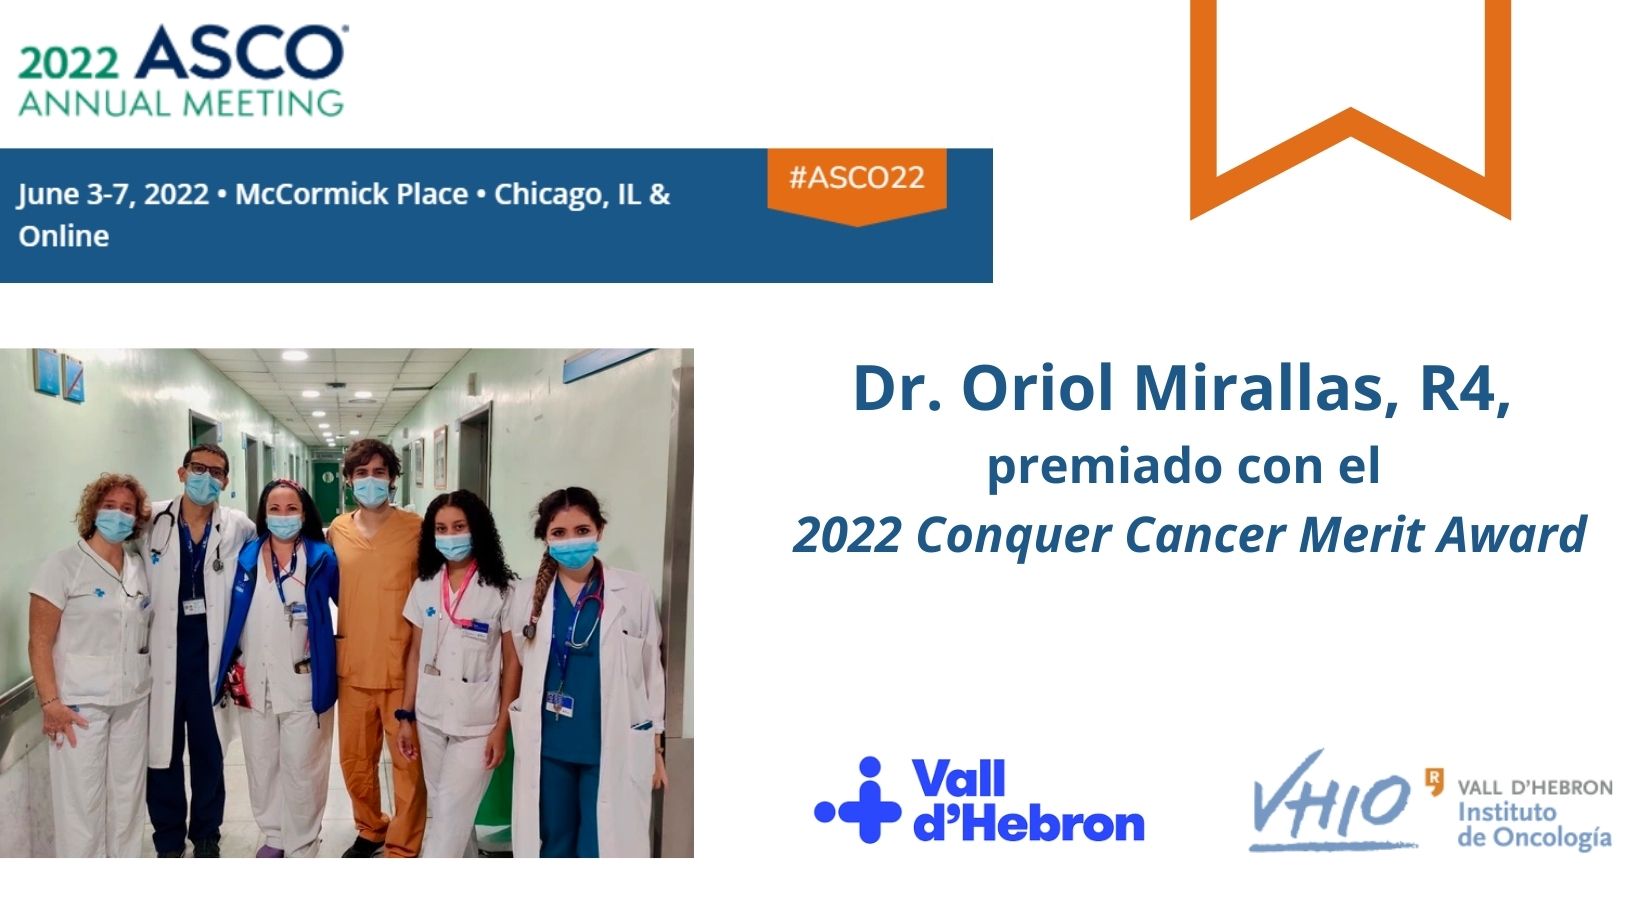 El Dr. Oriol Mirallas, R4, premiado por la Sociedad Americana de Oncología (ASCO)